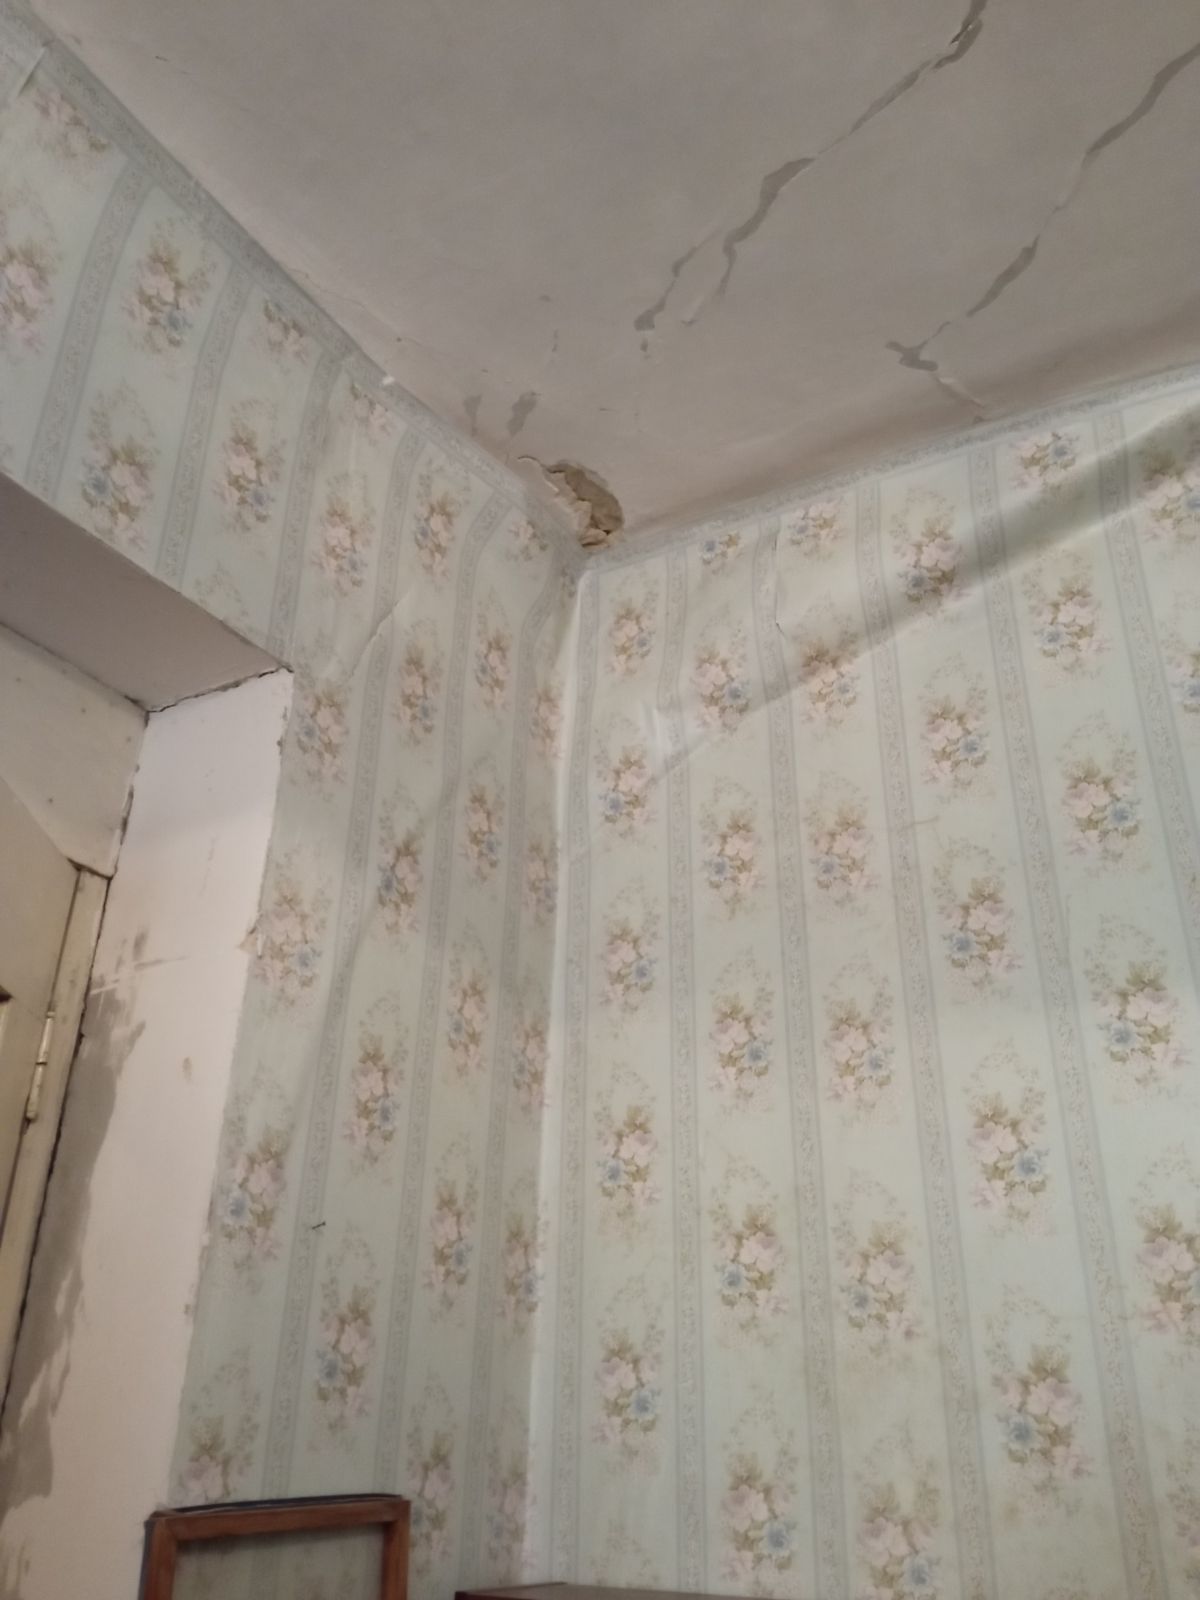 Дом с «кричащими» стенами обнаружили в центре Ставрополя. Фото: АТВмедиа